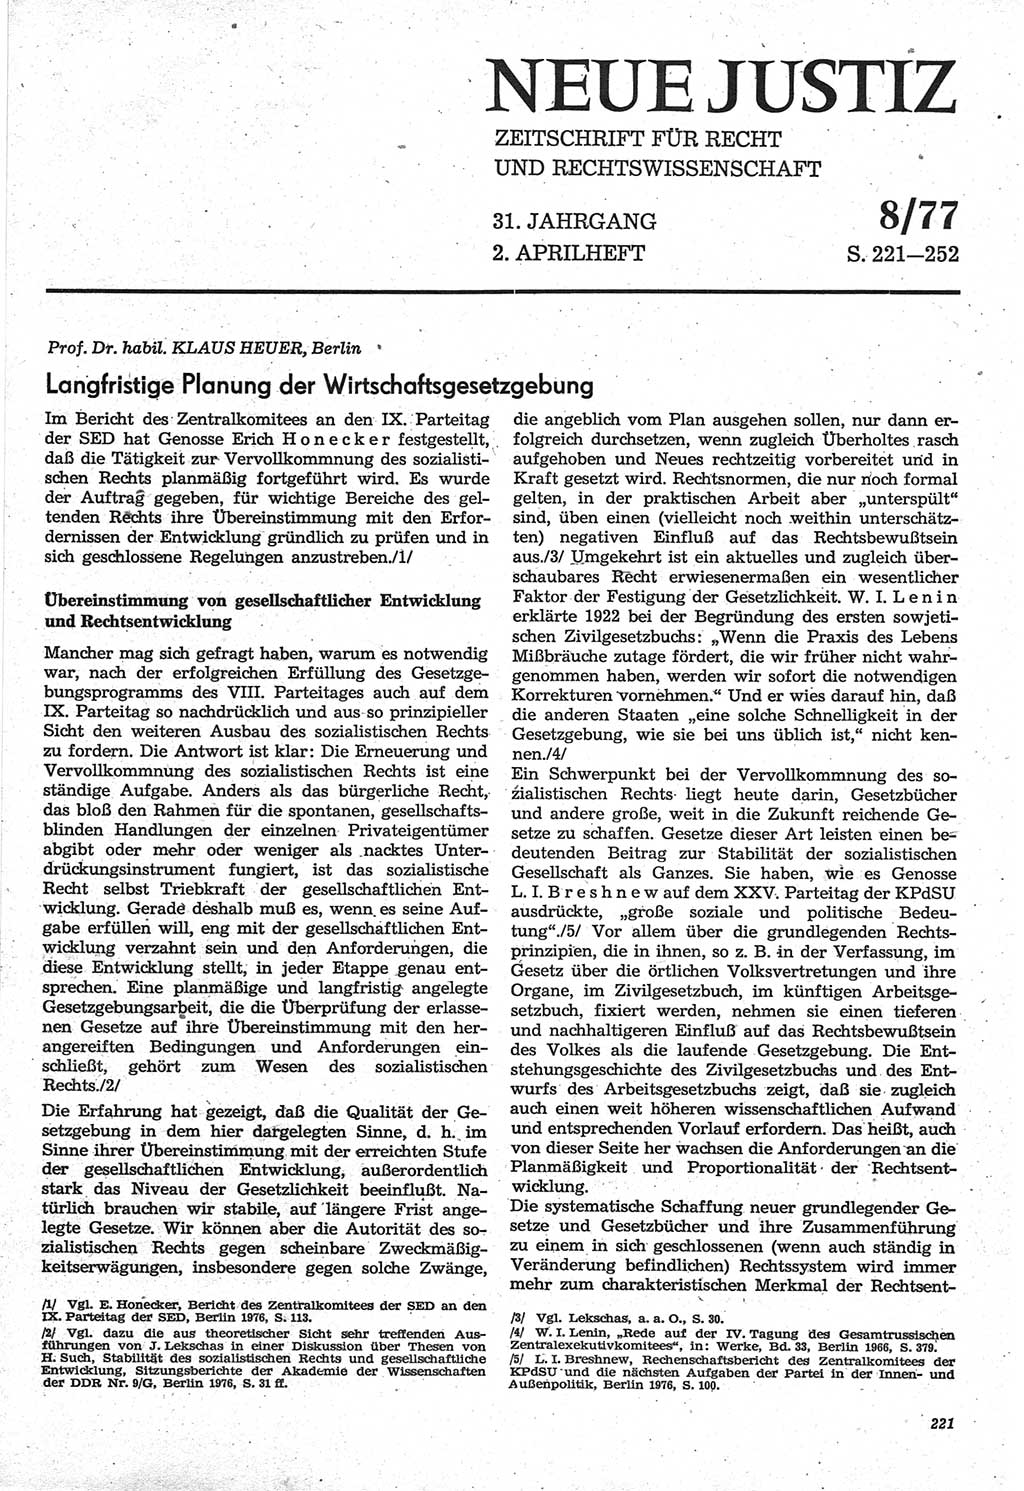 Neue Justiz (NJ), Zeitschrift für Recht und Rechtswissenschaft-Zeitschrift, sozialistisches Recht und Gesetzlichkeit, 31. Jahrgang 1977, Seite 221 (NJ DDR 1977, S. 221)